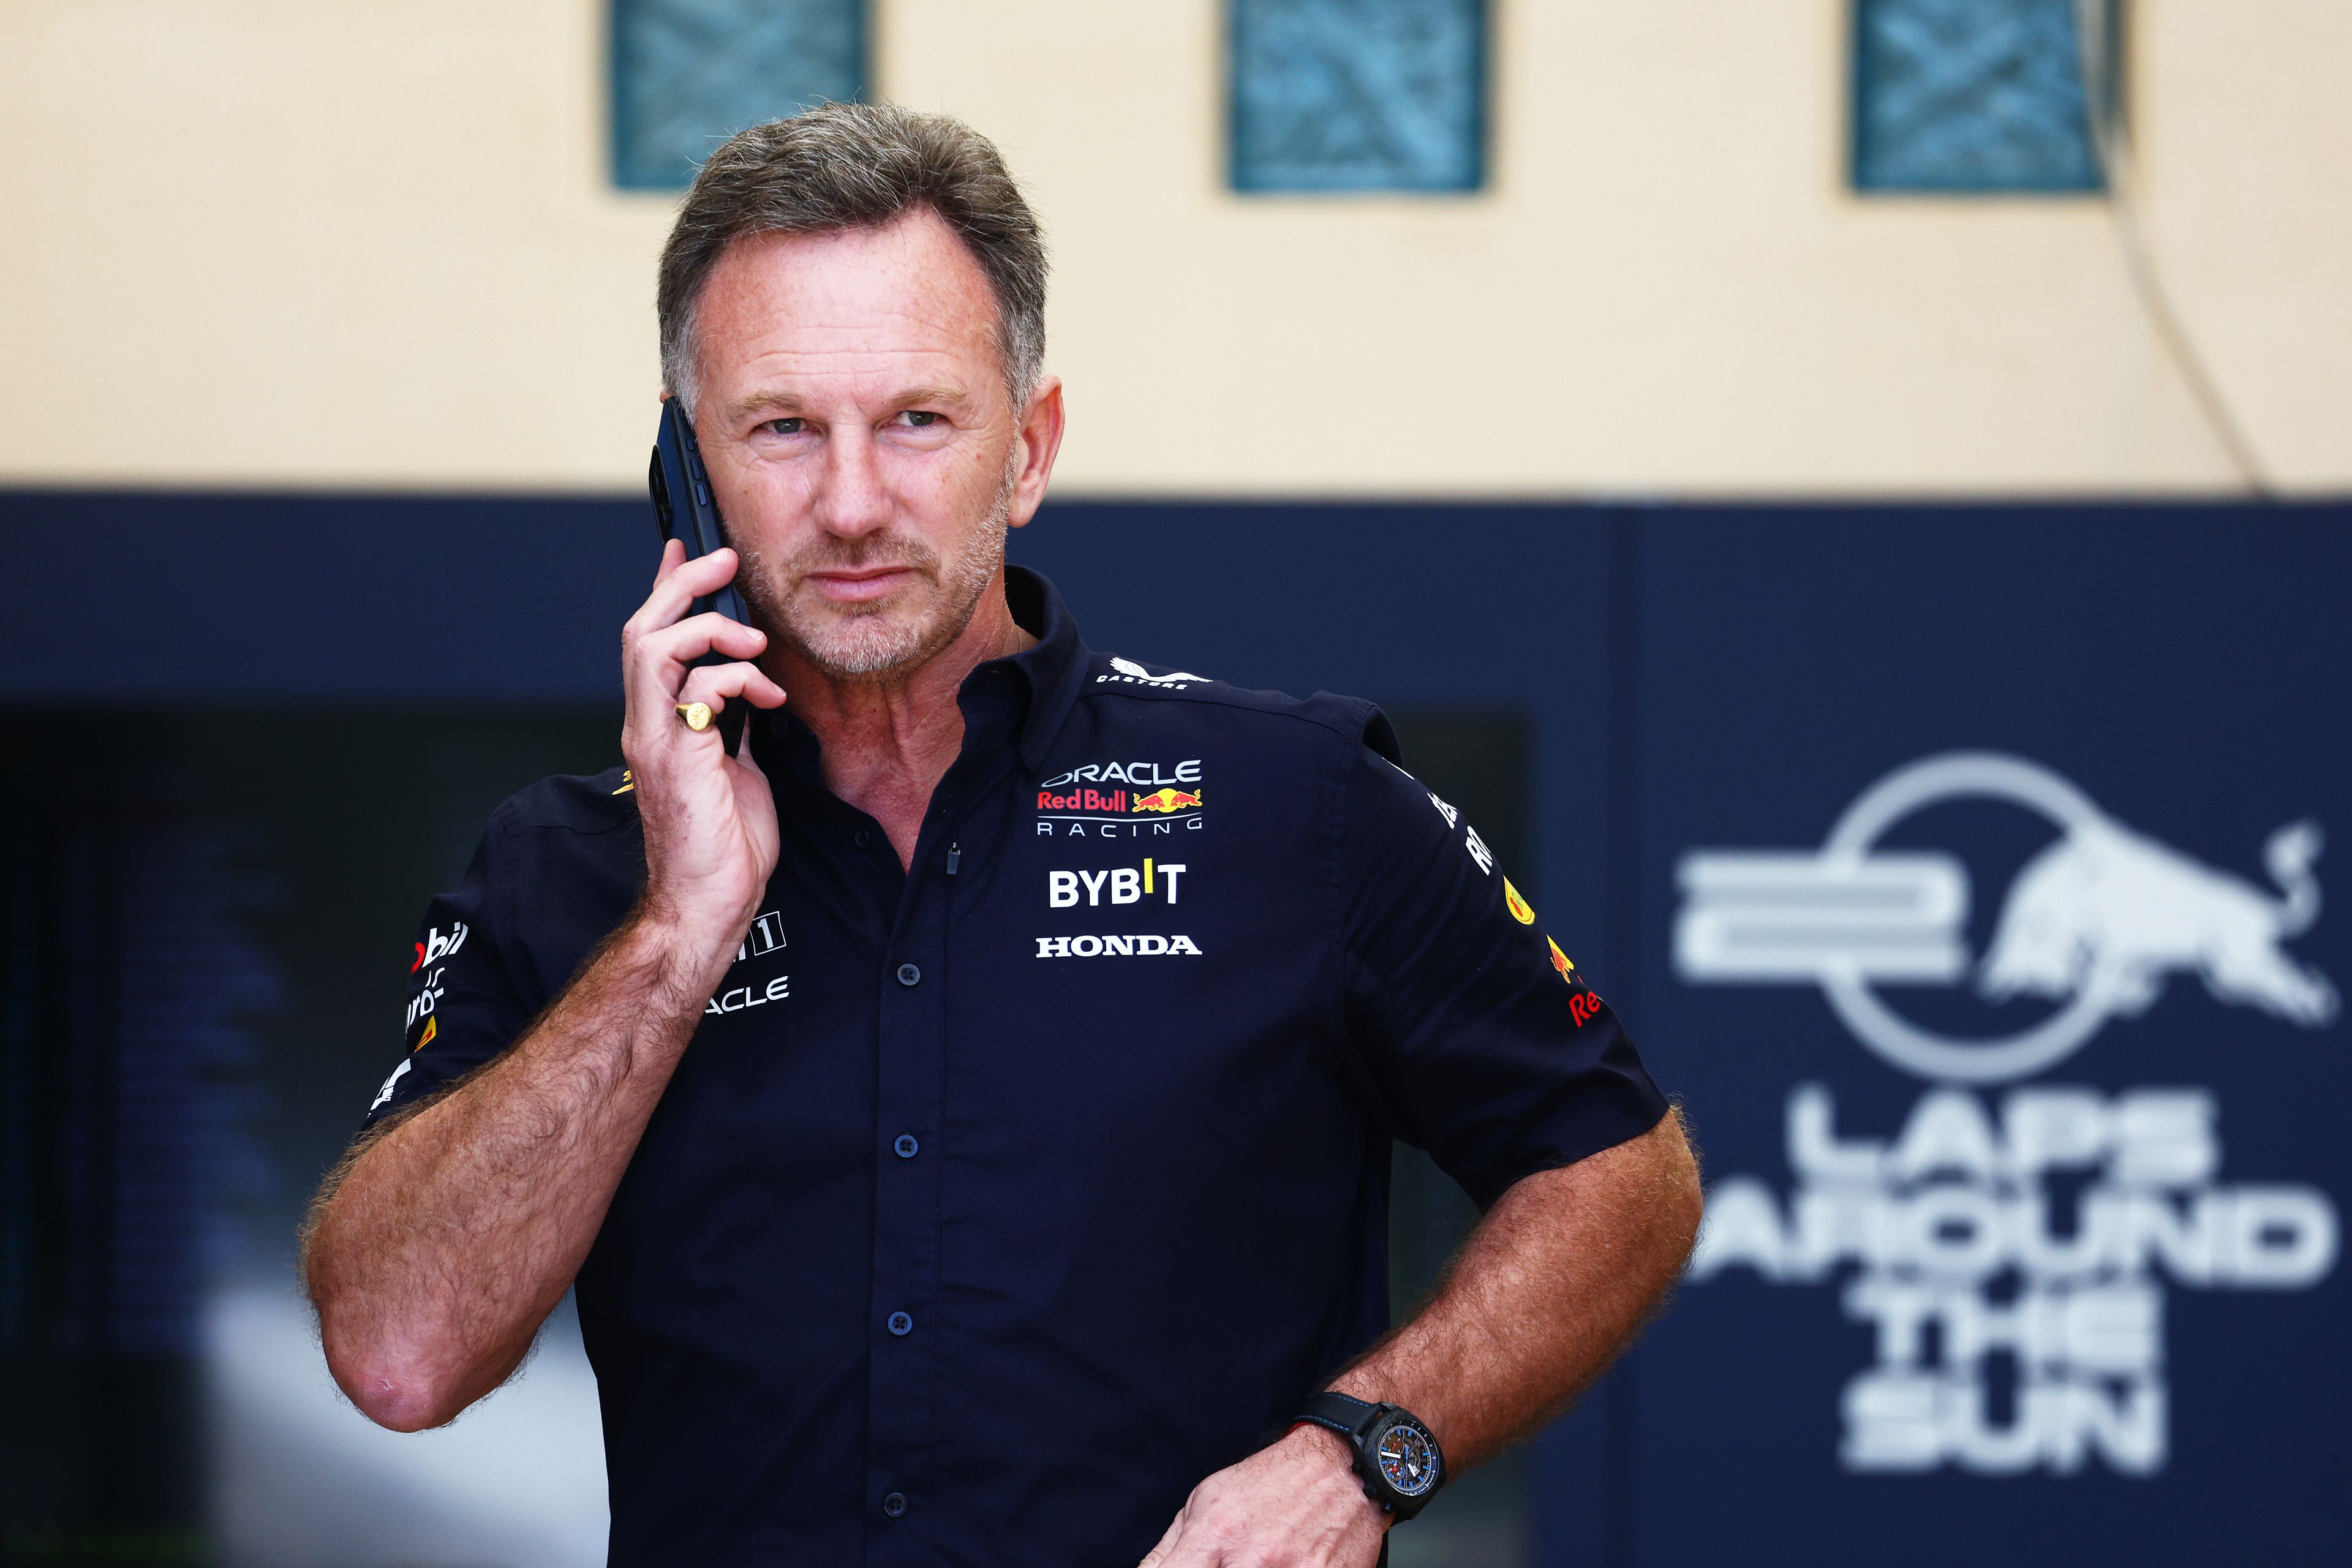 Christian Horner maradt a Red Bull Racing csapatfőnöke